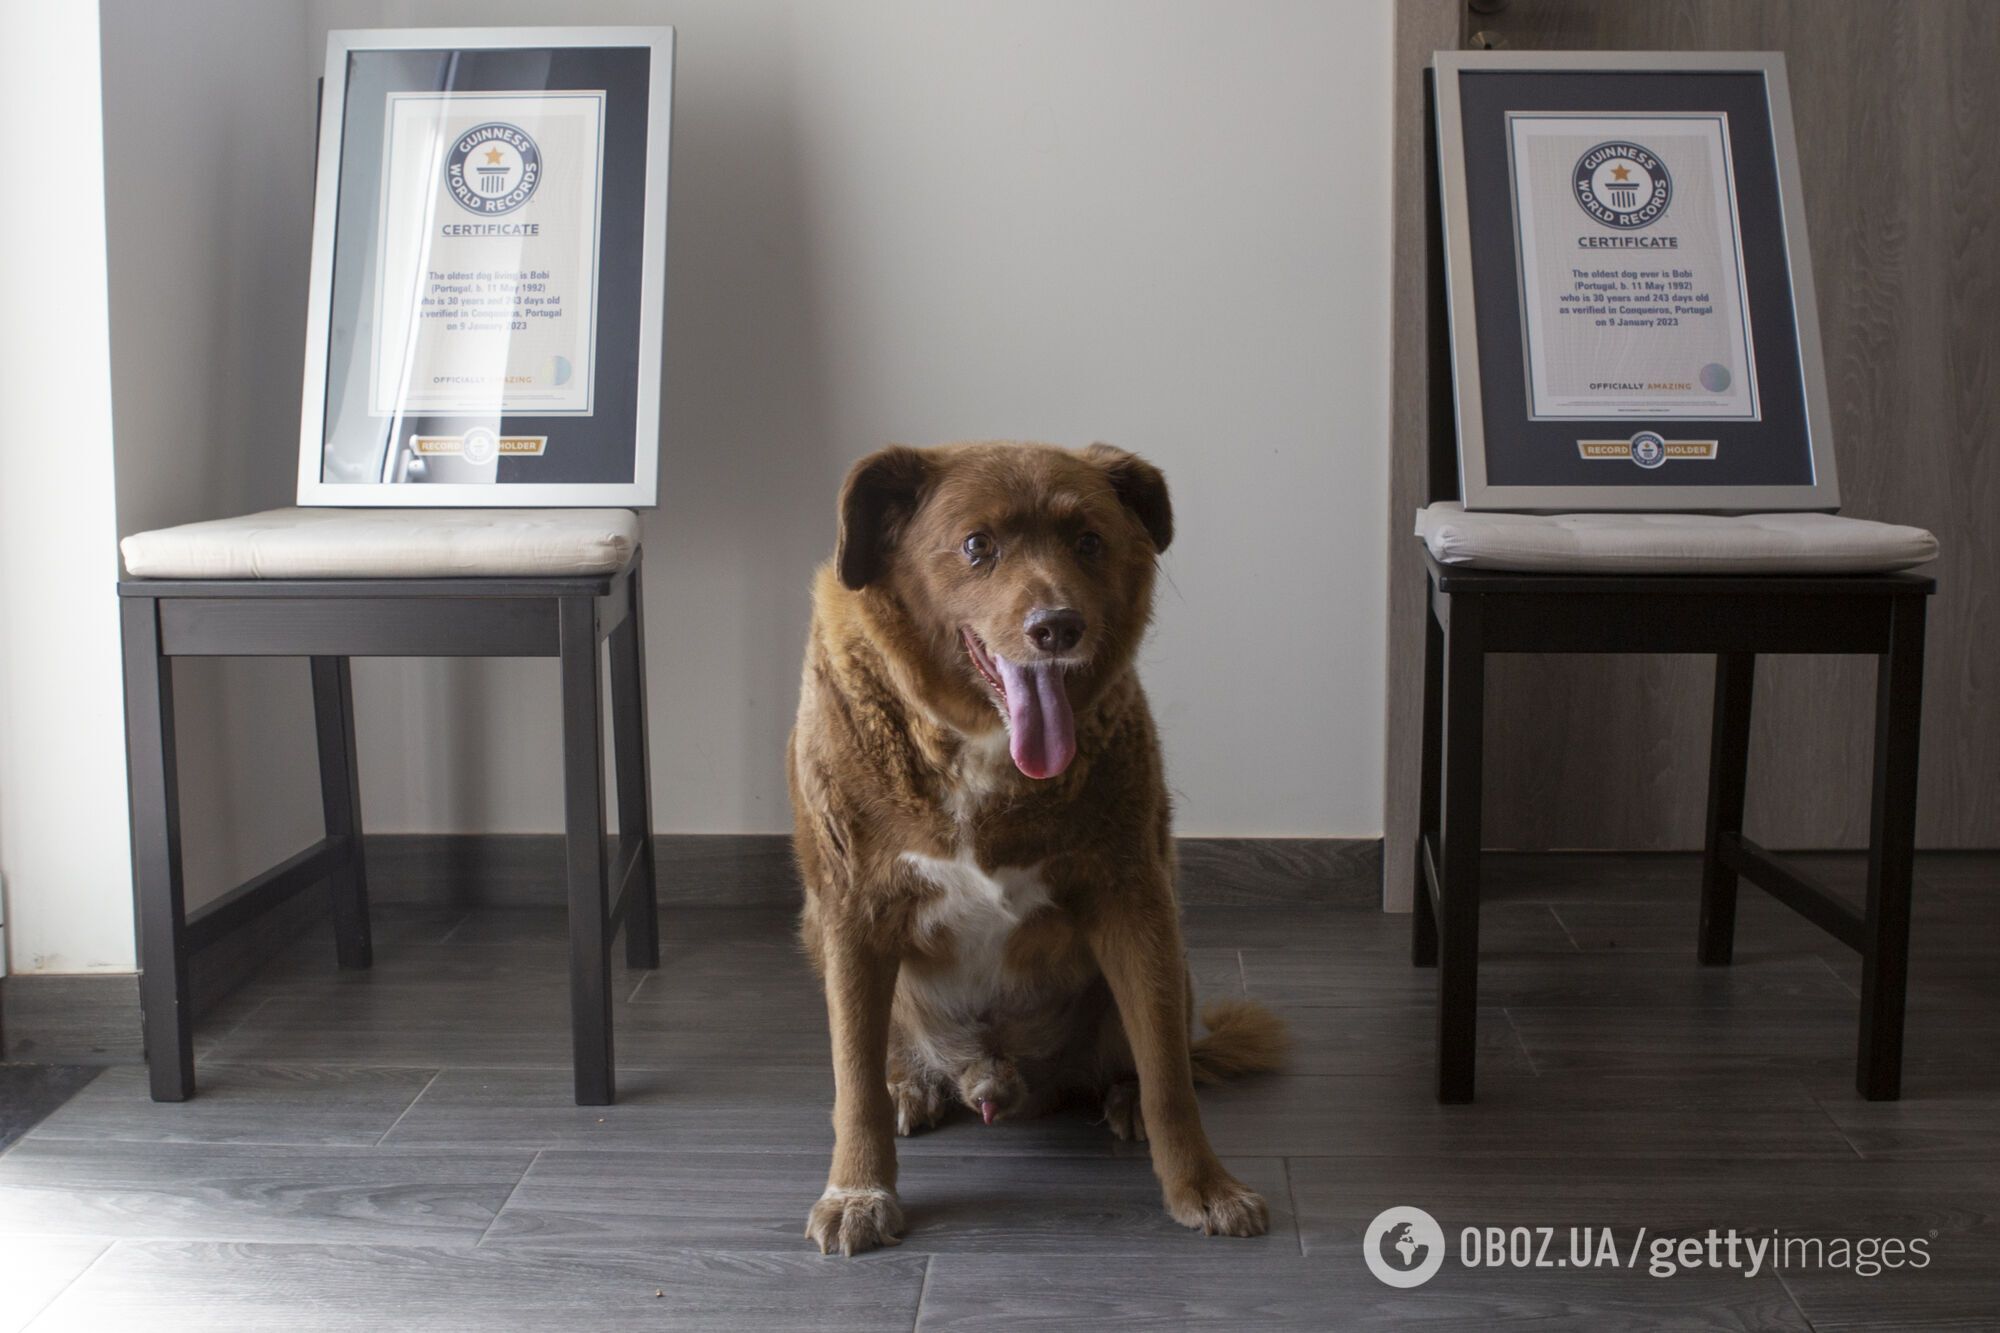 Найстарішого собаку в історії позбавили титулу Книги рекордів Гіннеса після перевірки доказів
